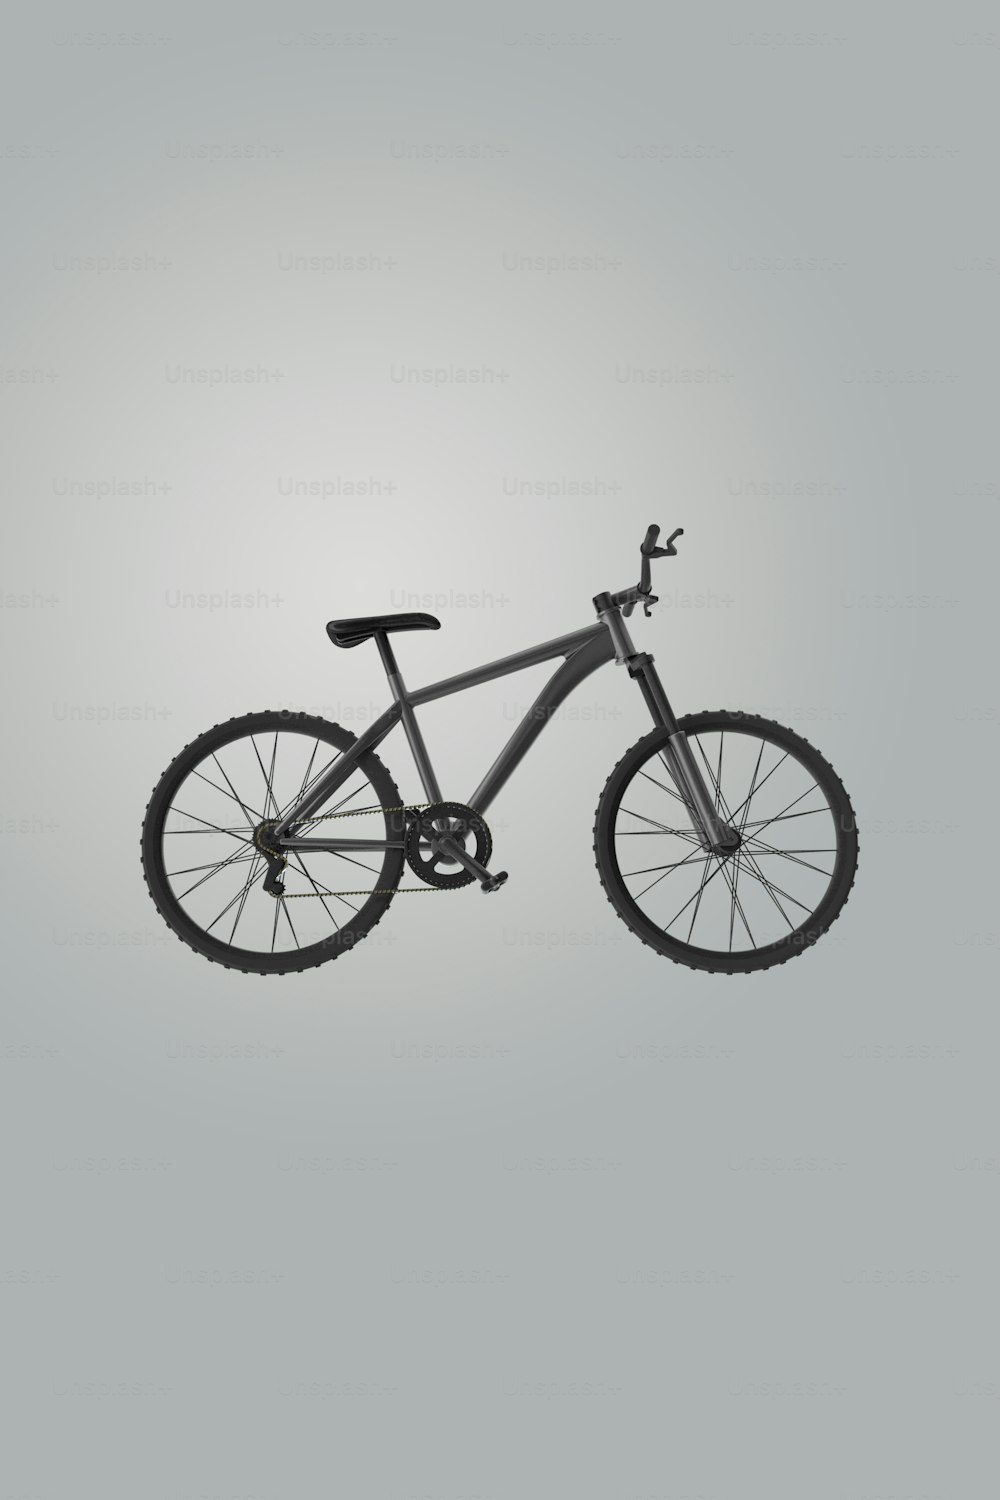 Una foto en blanco y negro de una bicicleta